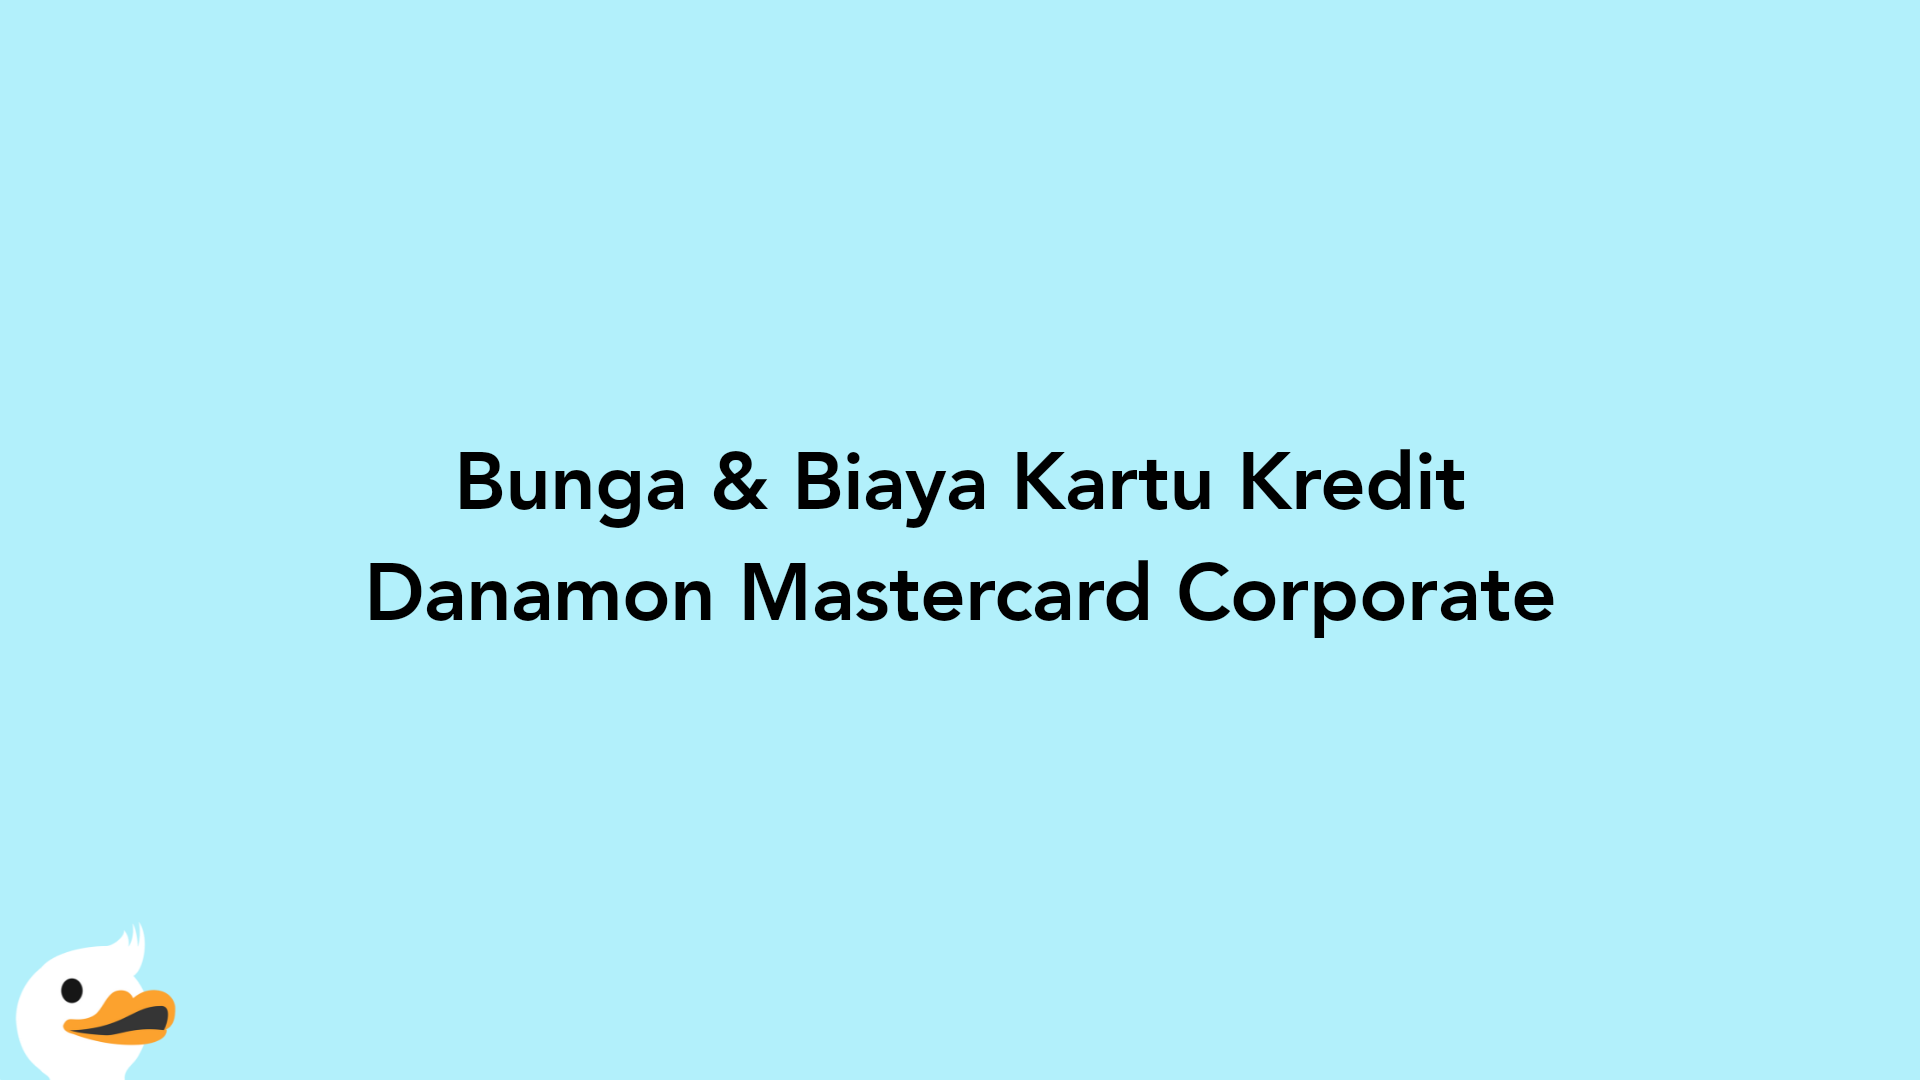 Bunga & Biaya Kartu Kredit Danamon Mastercard Corporate